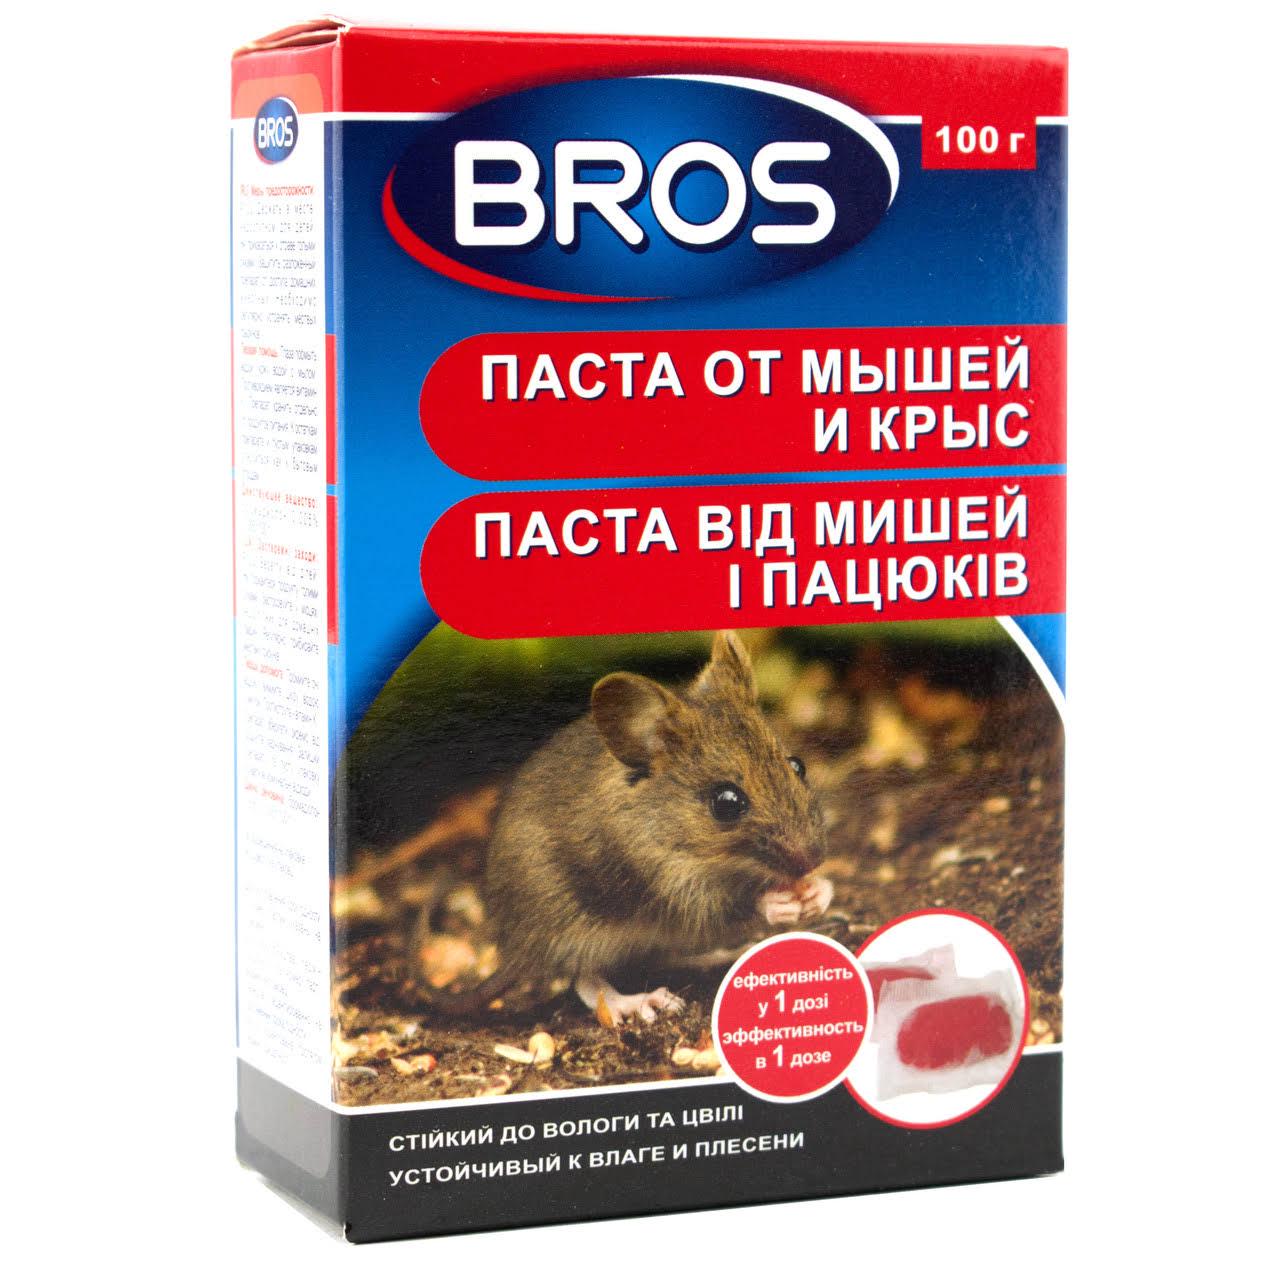 Средство родентицидное Bros паста от мышей и крыс (MKU-61583)